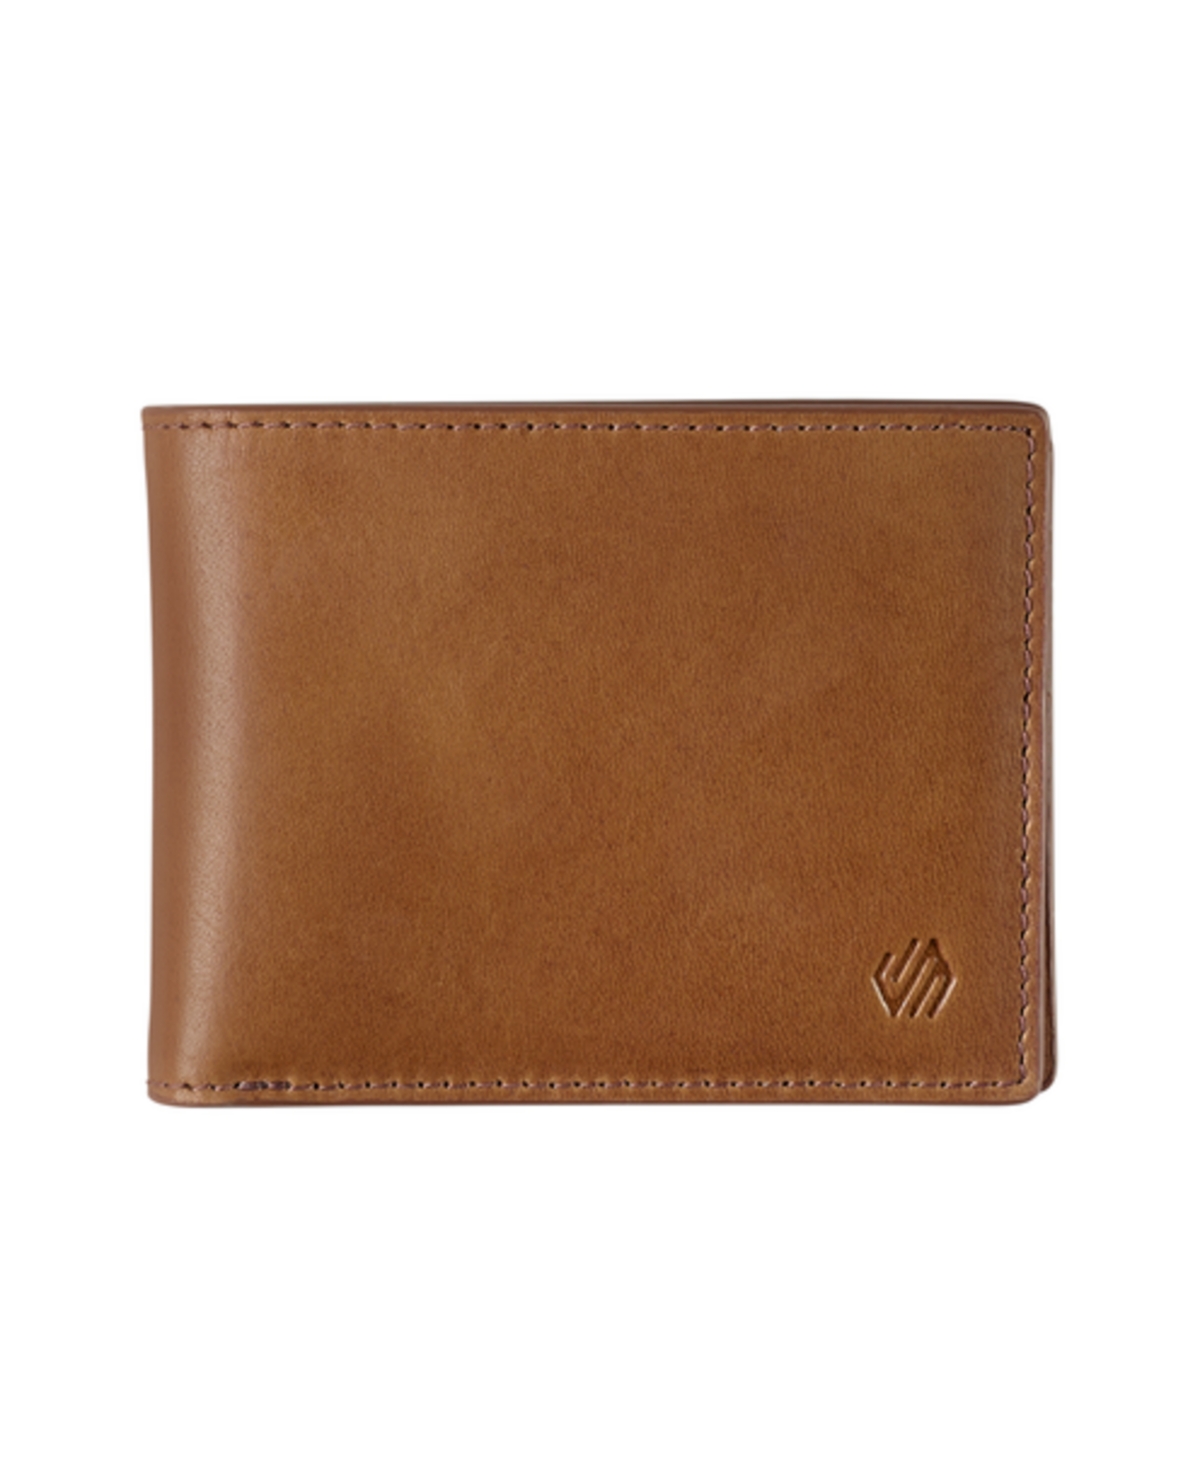 Men's Rhodes 2-in-1 Billfold Wallet - Tan Full Grain Leather